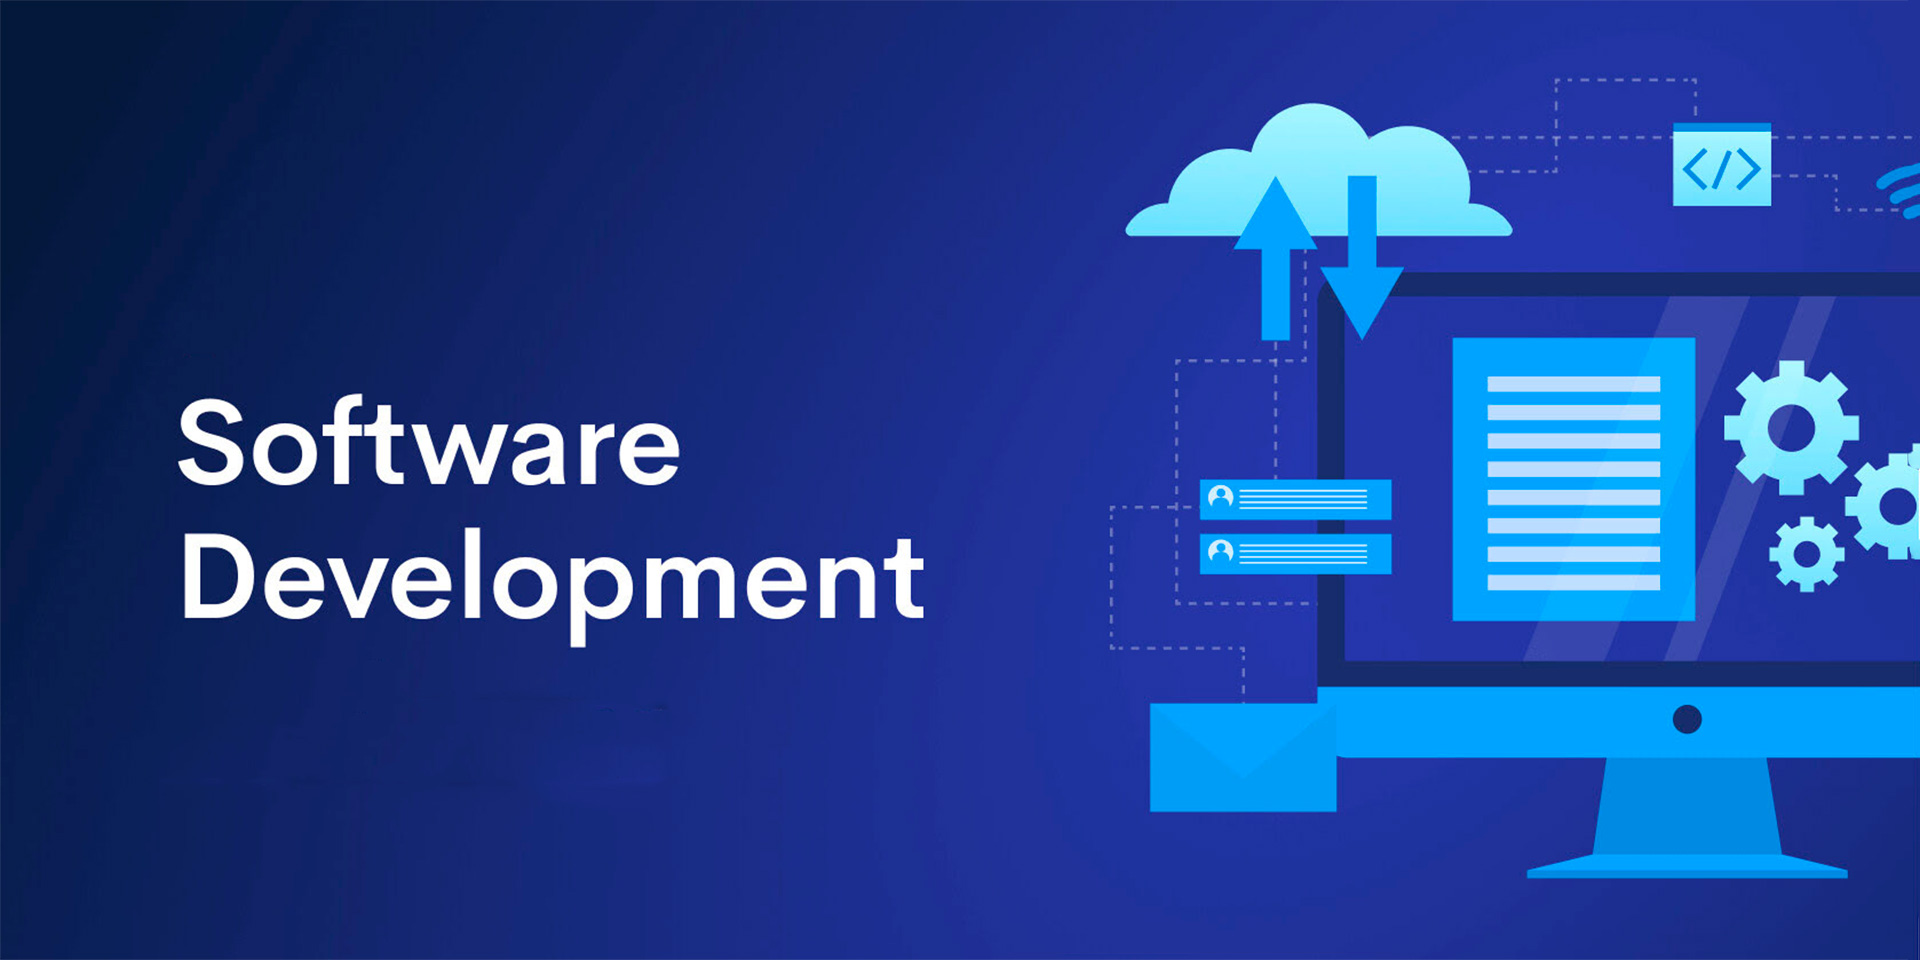 Software Development: A Beginner’s Guide